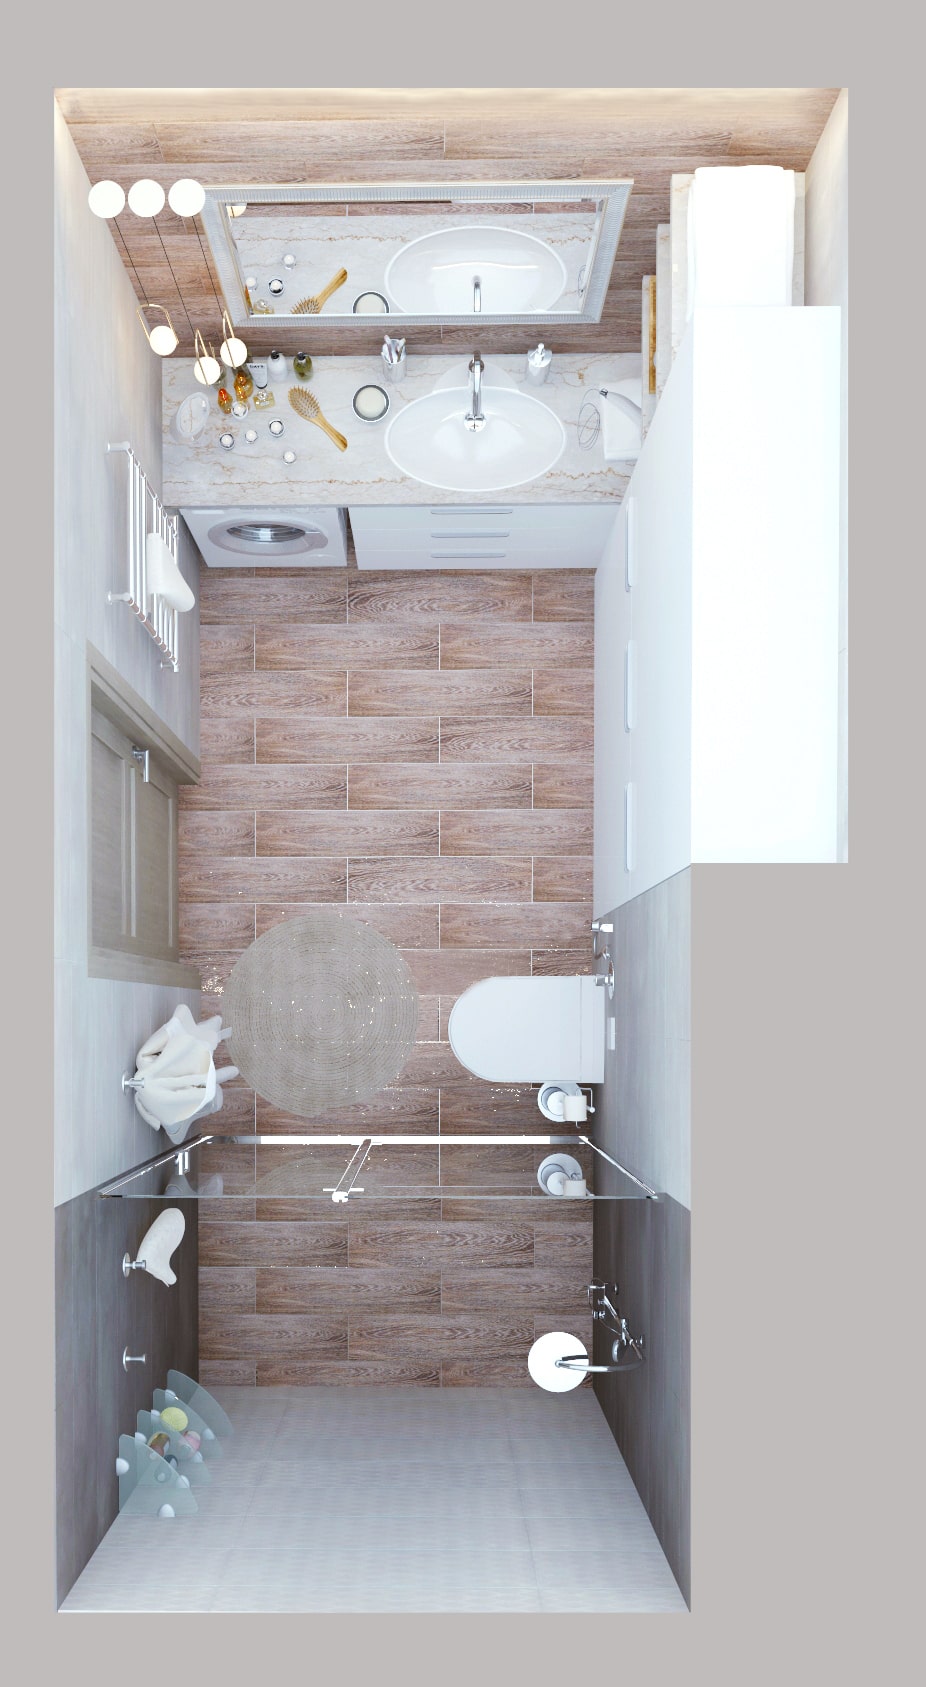 Визуализация ванной комнаты в белых тонах 8 кв.м, белый шкаф, зеркало, раковина, тумба, душевая кабина